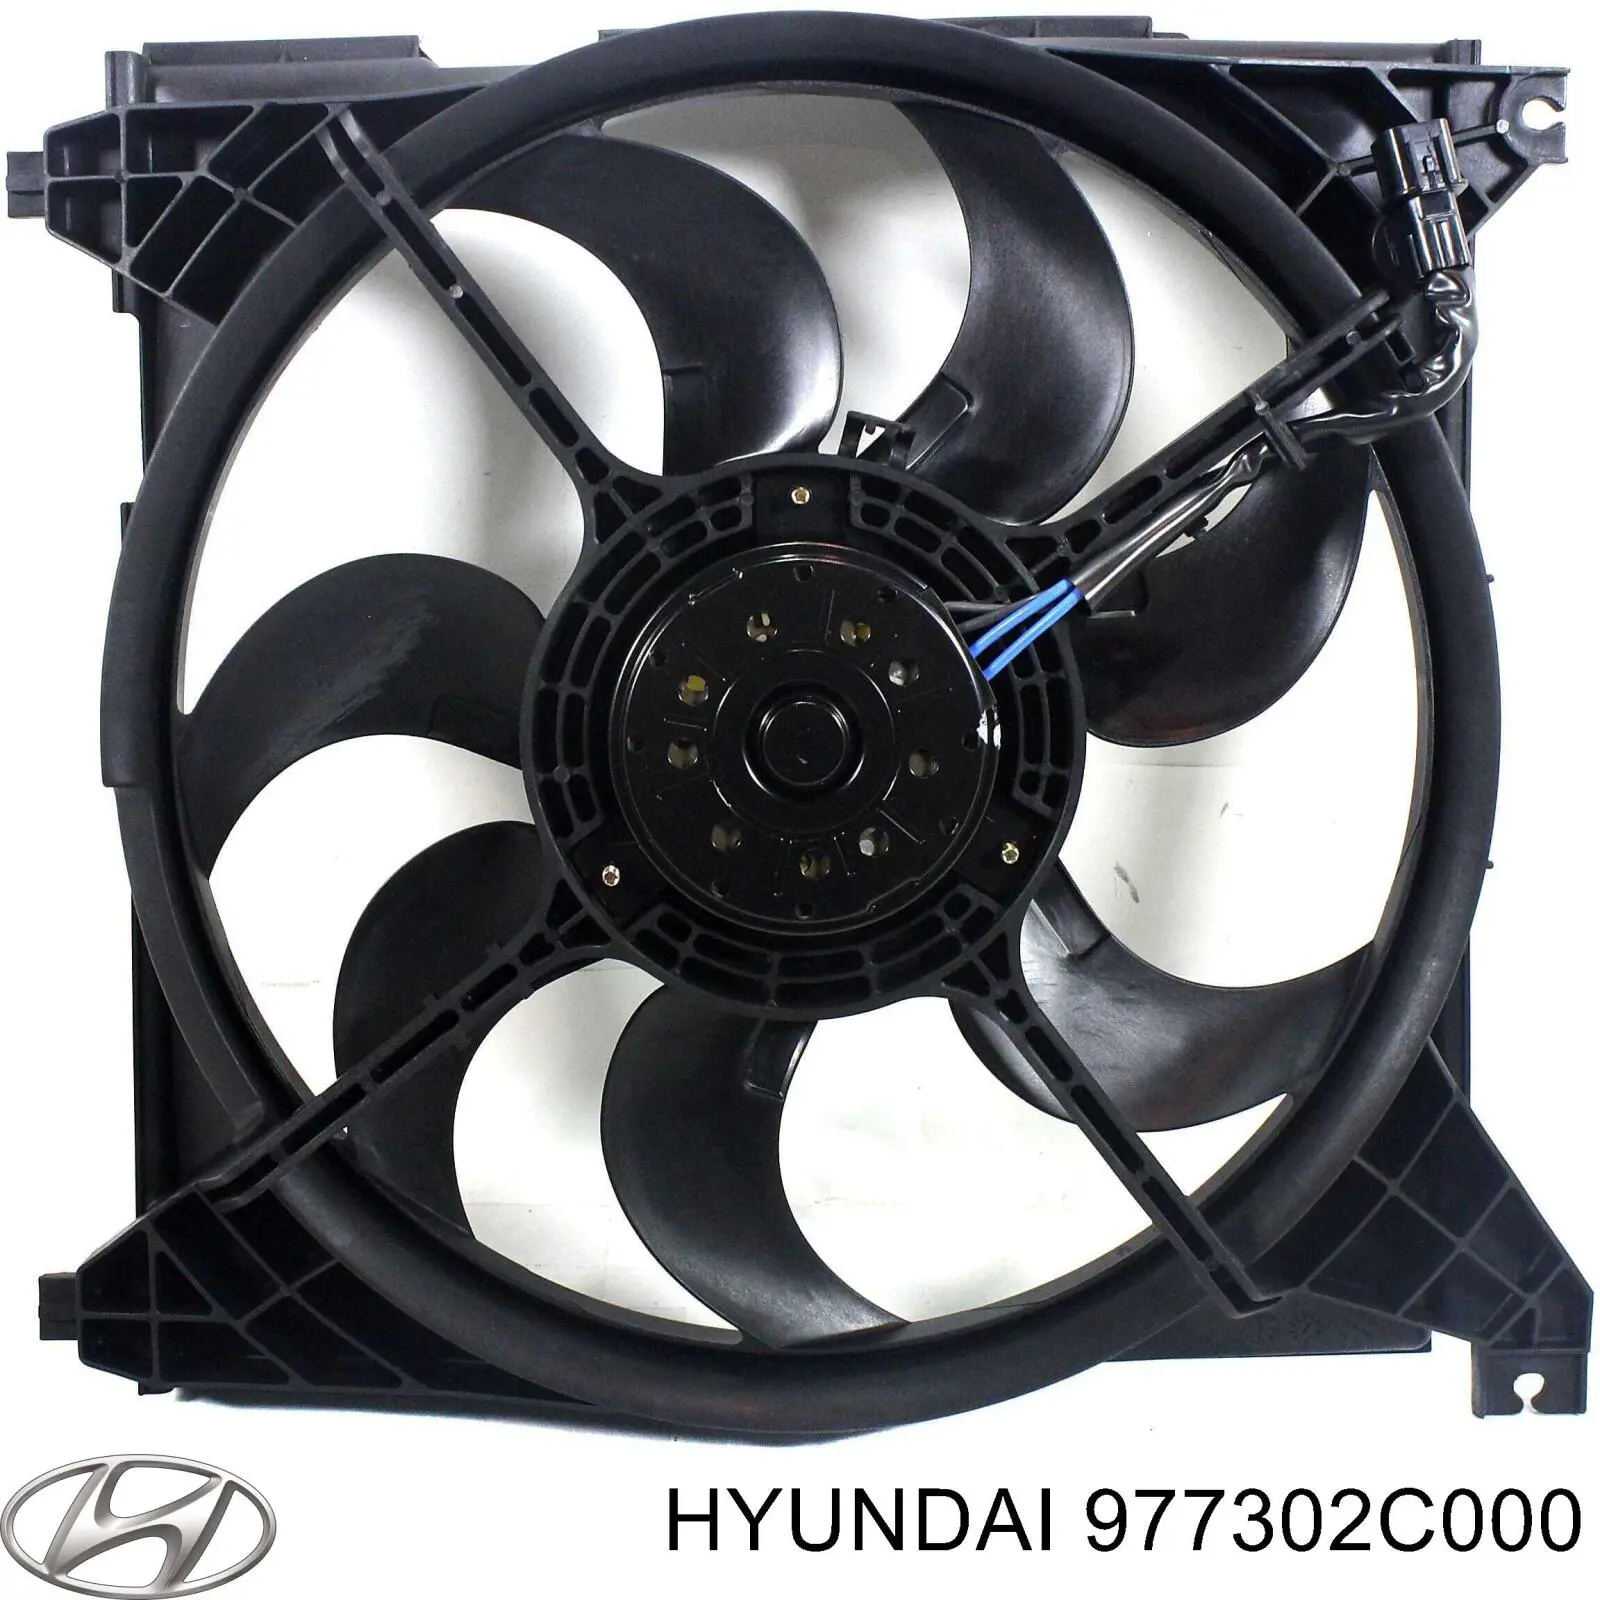 Difusor de radiador, aire acondicionado, completo con motor y rodete para Hyundai Elantra 